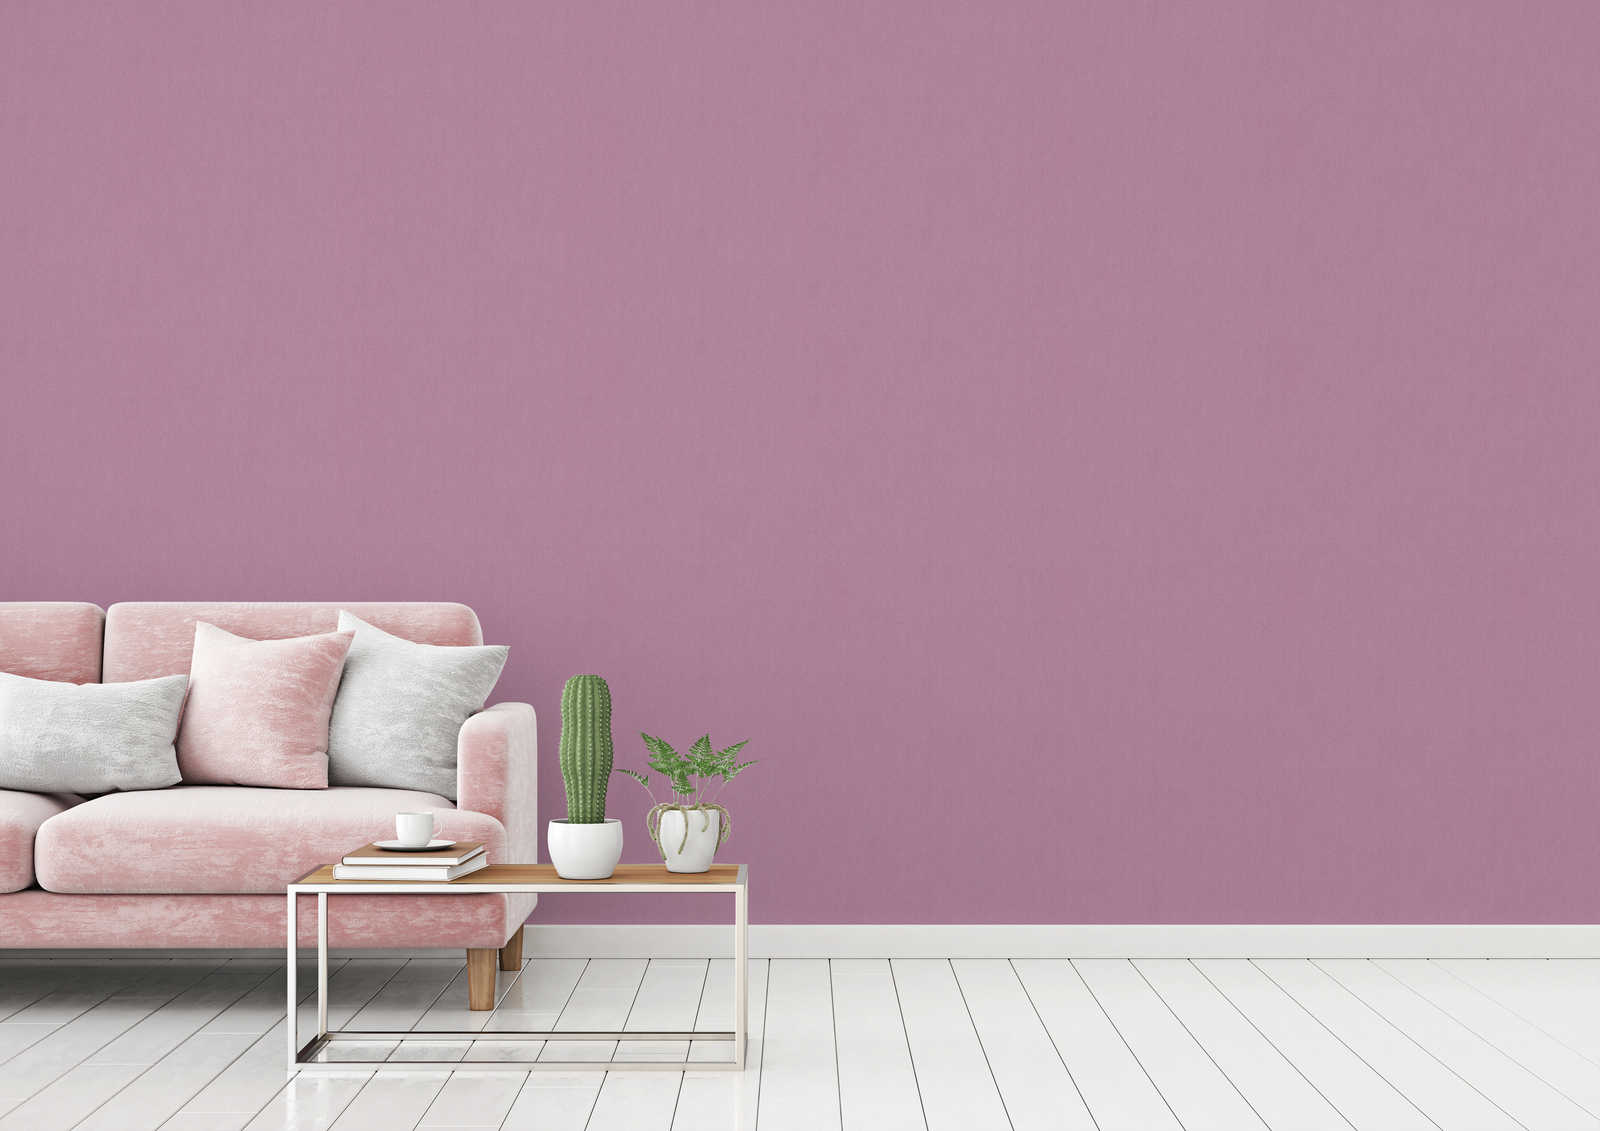             wallpaper lilac plain linen texture & textile look - purple
        